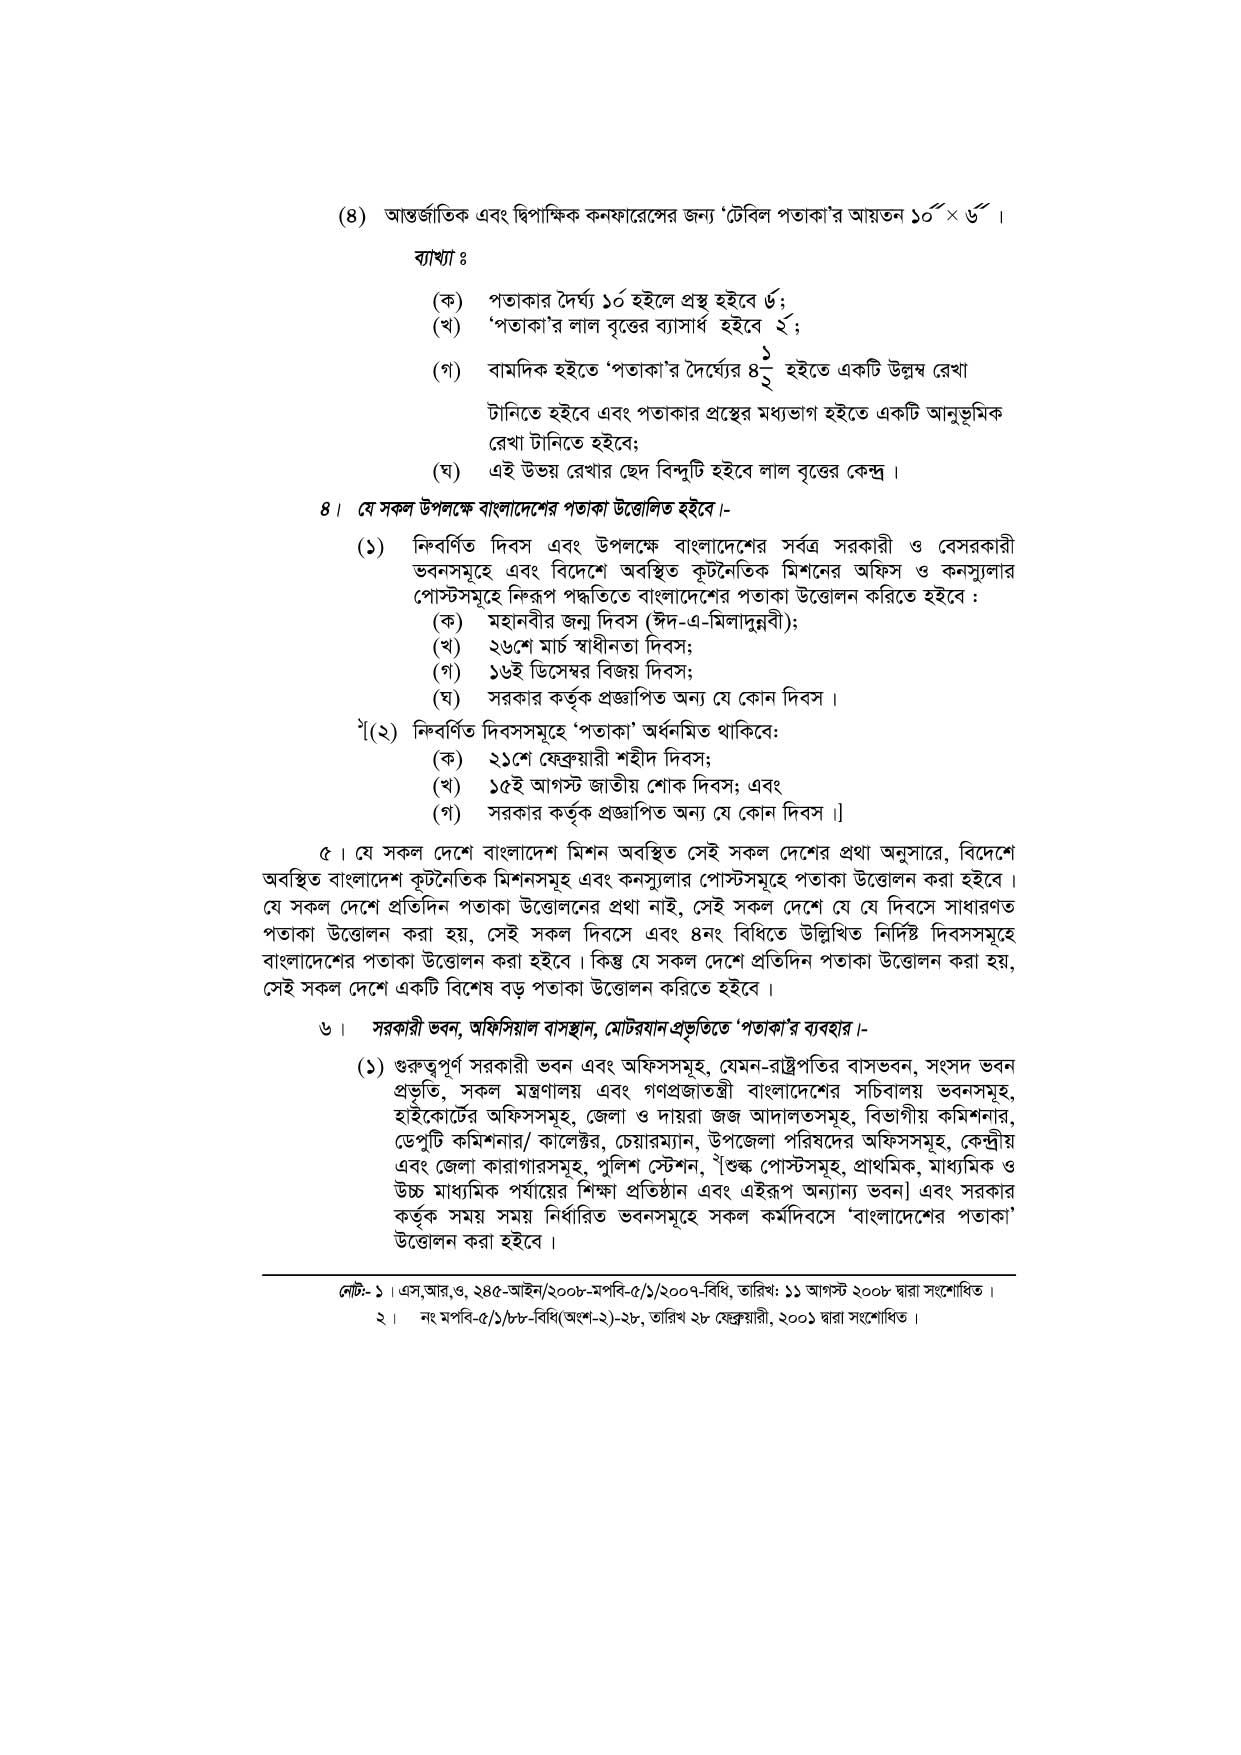 জাতীয় পতাকা বিধিমালা-১৯৭২ (সংশোধিত ২০১০) pdf